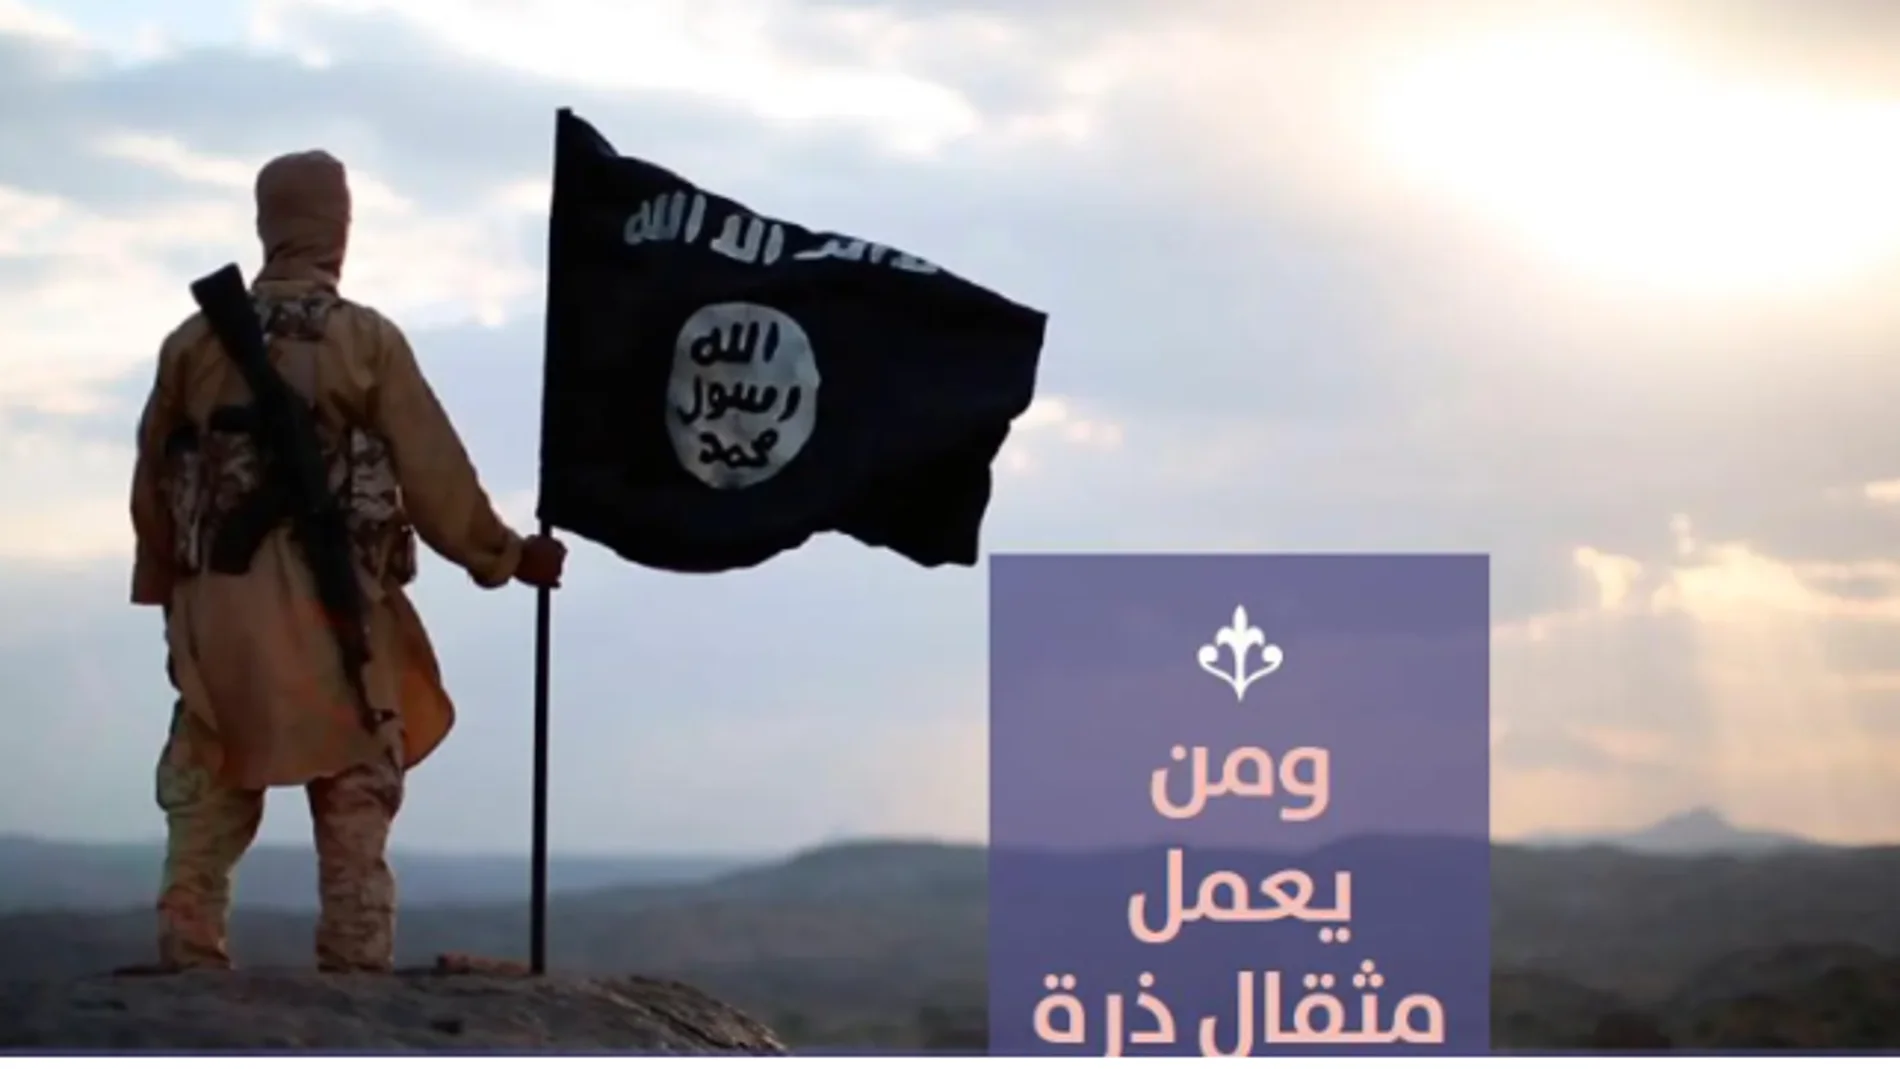 Los grupos yihadistas suelen publicar imágenes alusivas a que los musulmanes conquistarán el mundo